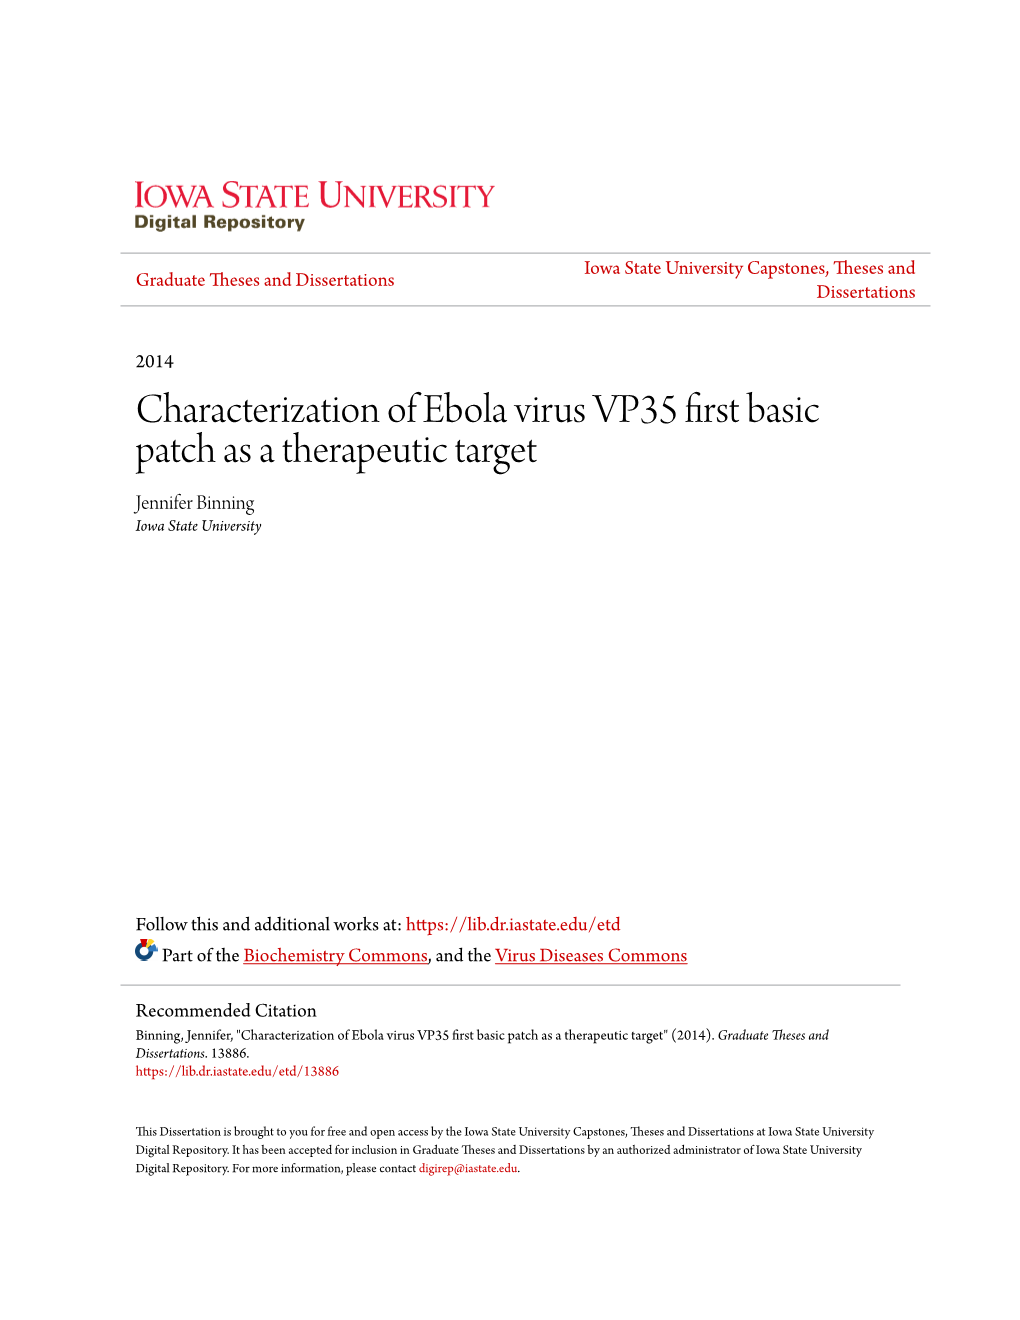 Characterization of Ebola Virus VP35 First Basic Patch As a Therapeutic Target Jennifer Binning Iowa State University